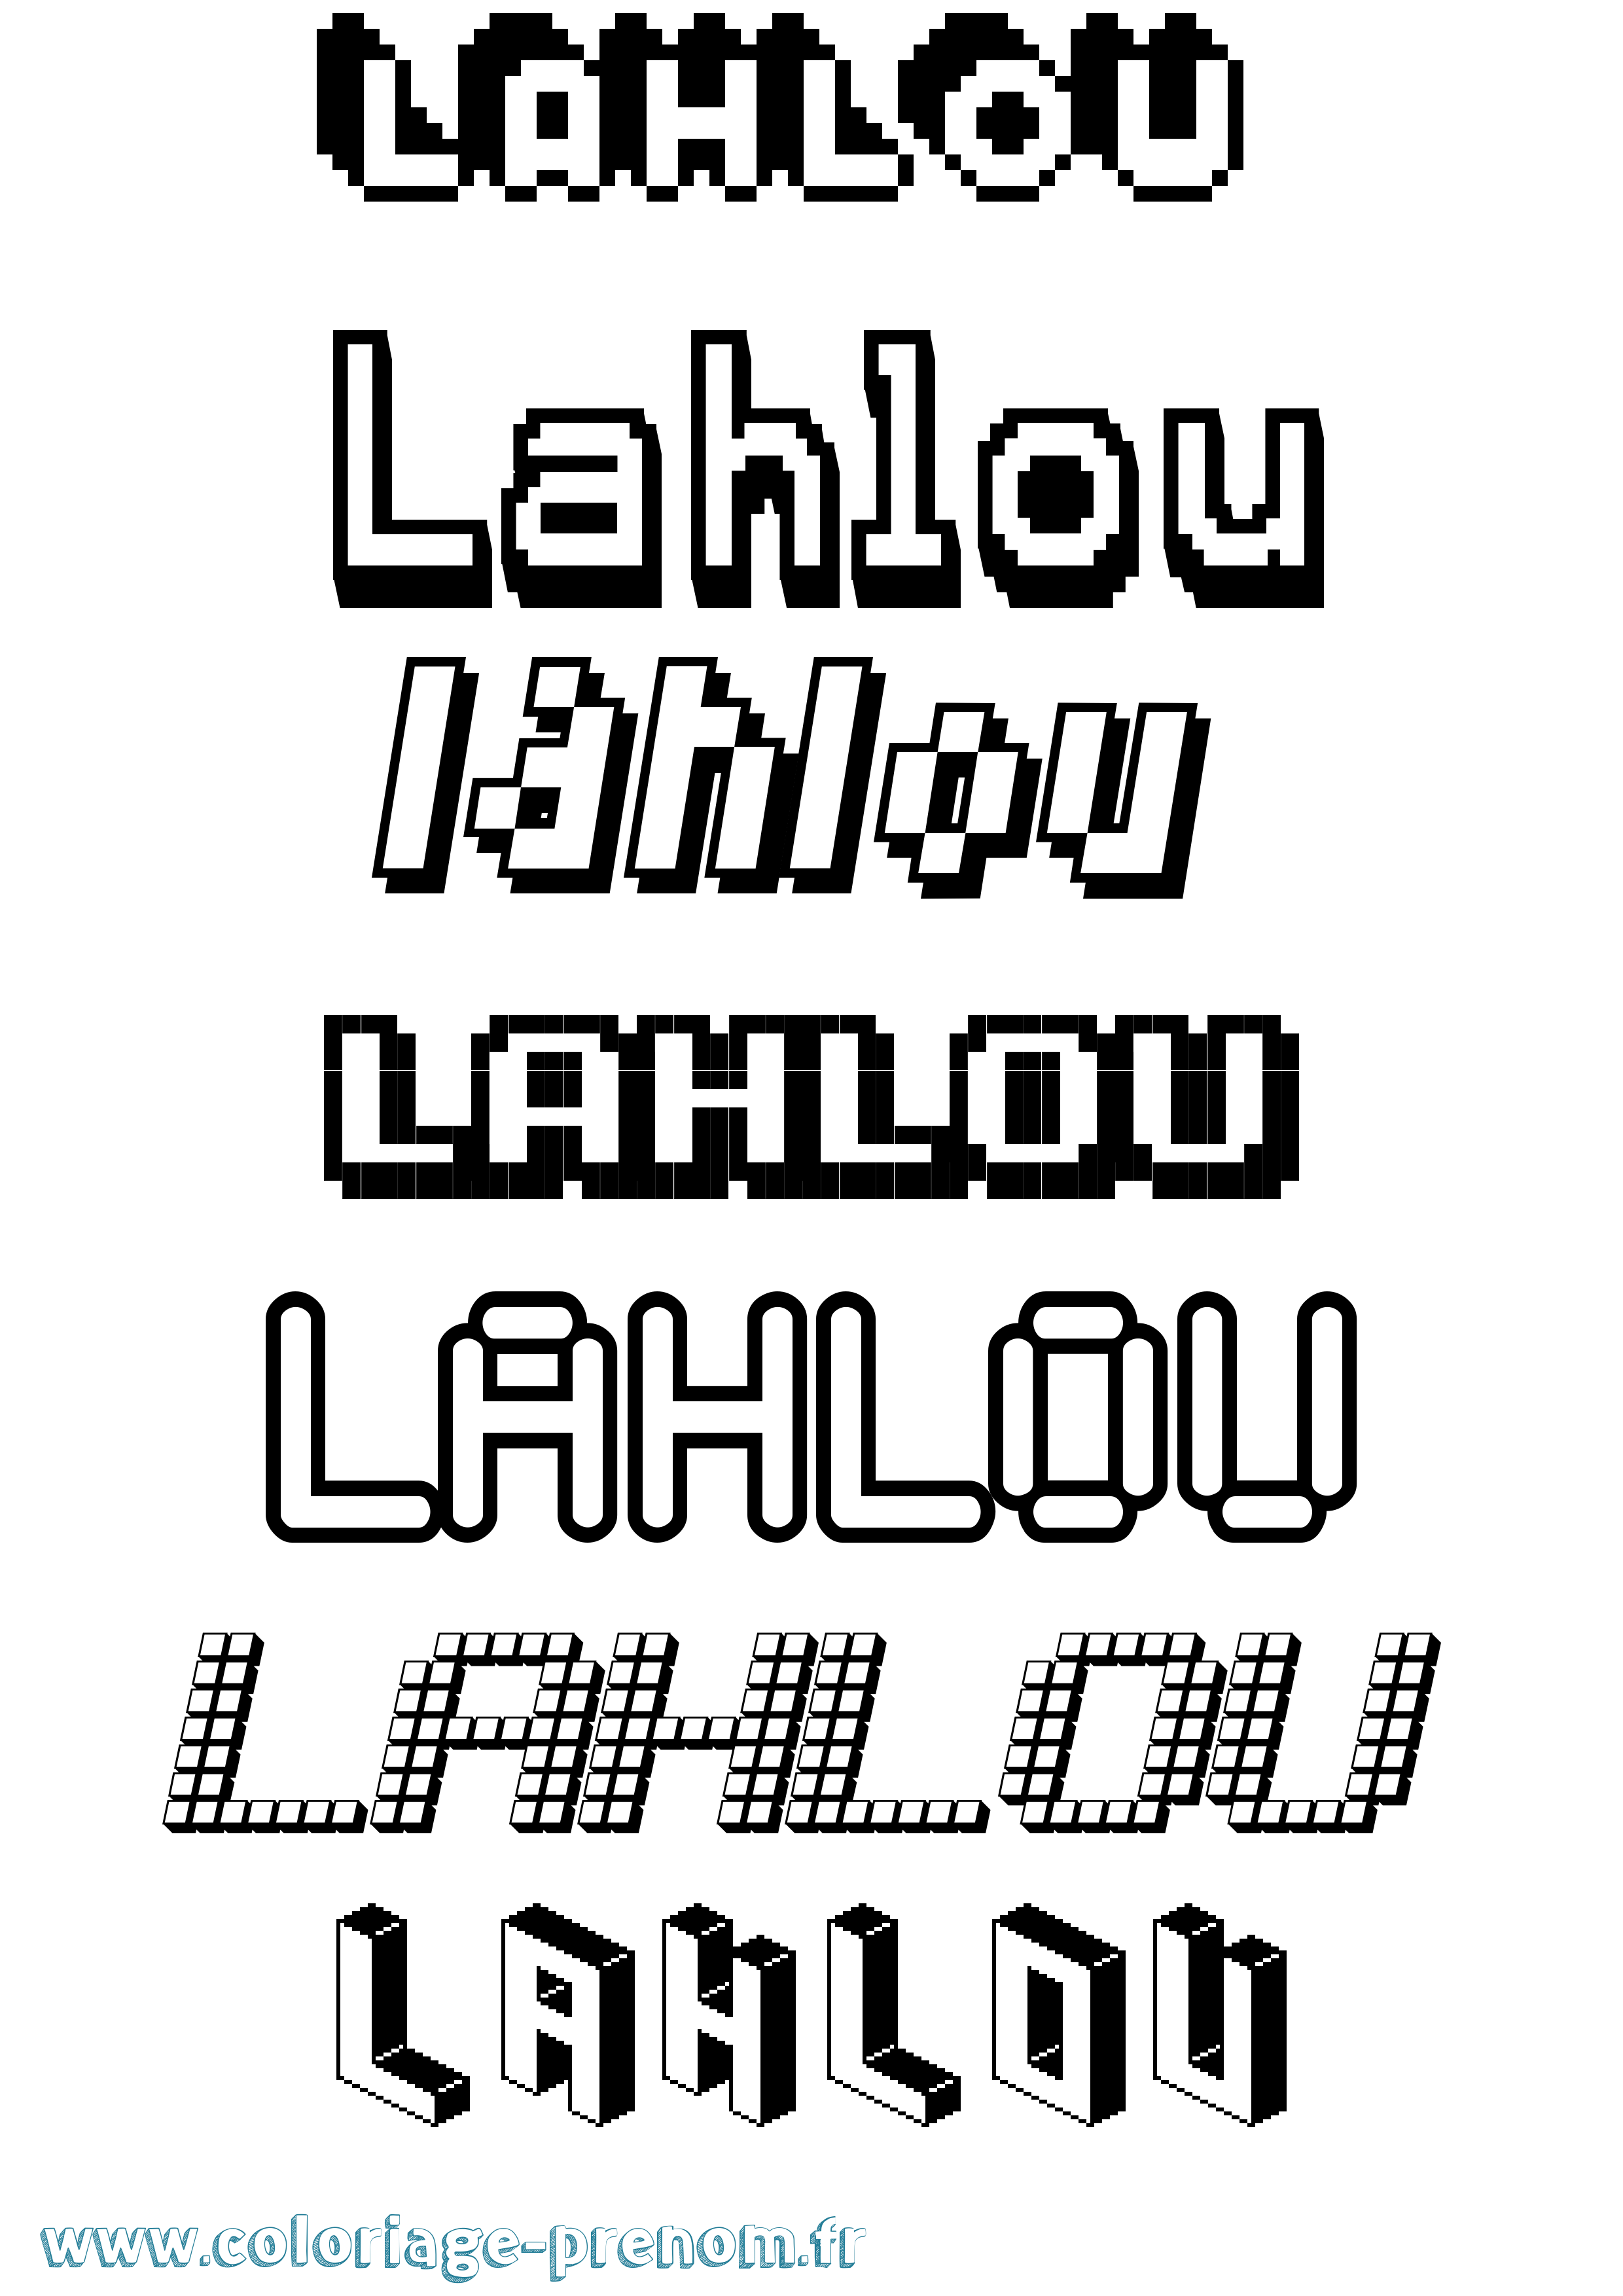 Coloriage prénom Lahlou Pixel